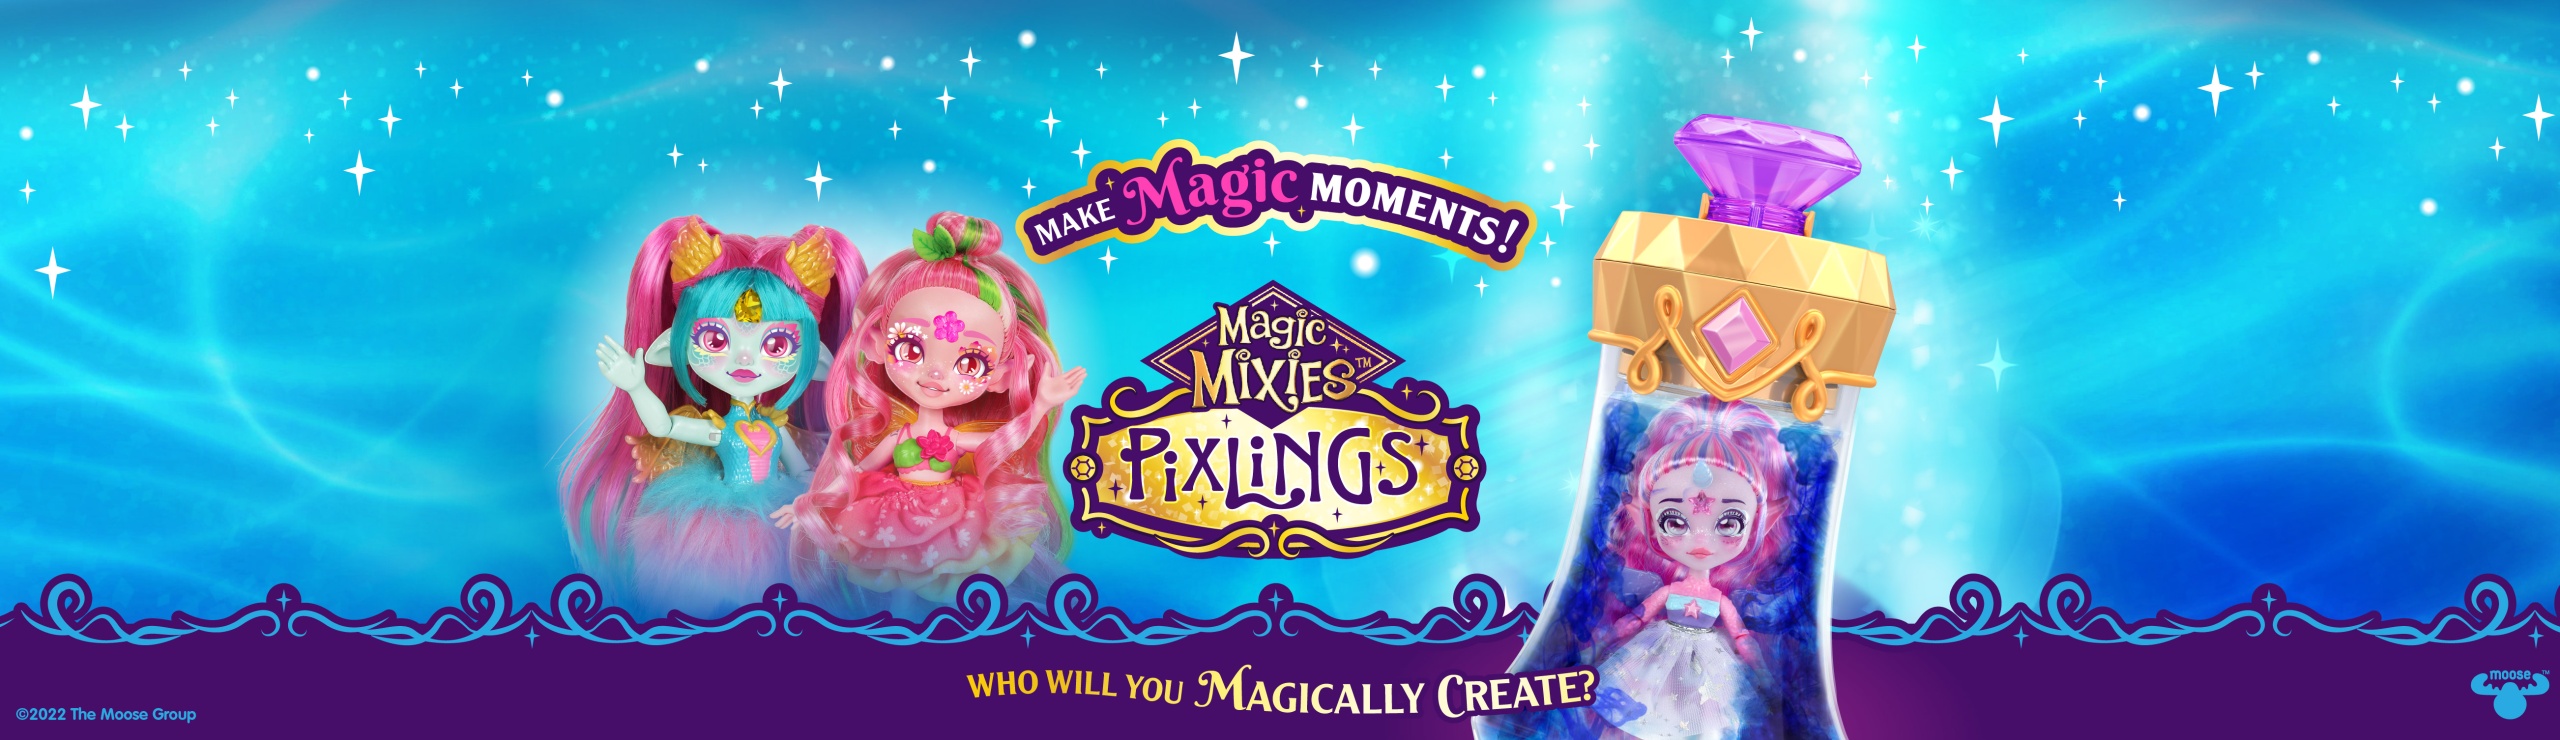 Magic Mixies Pixlings Deerlee 